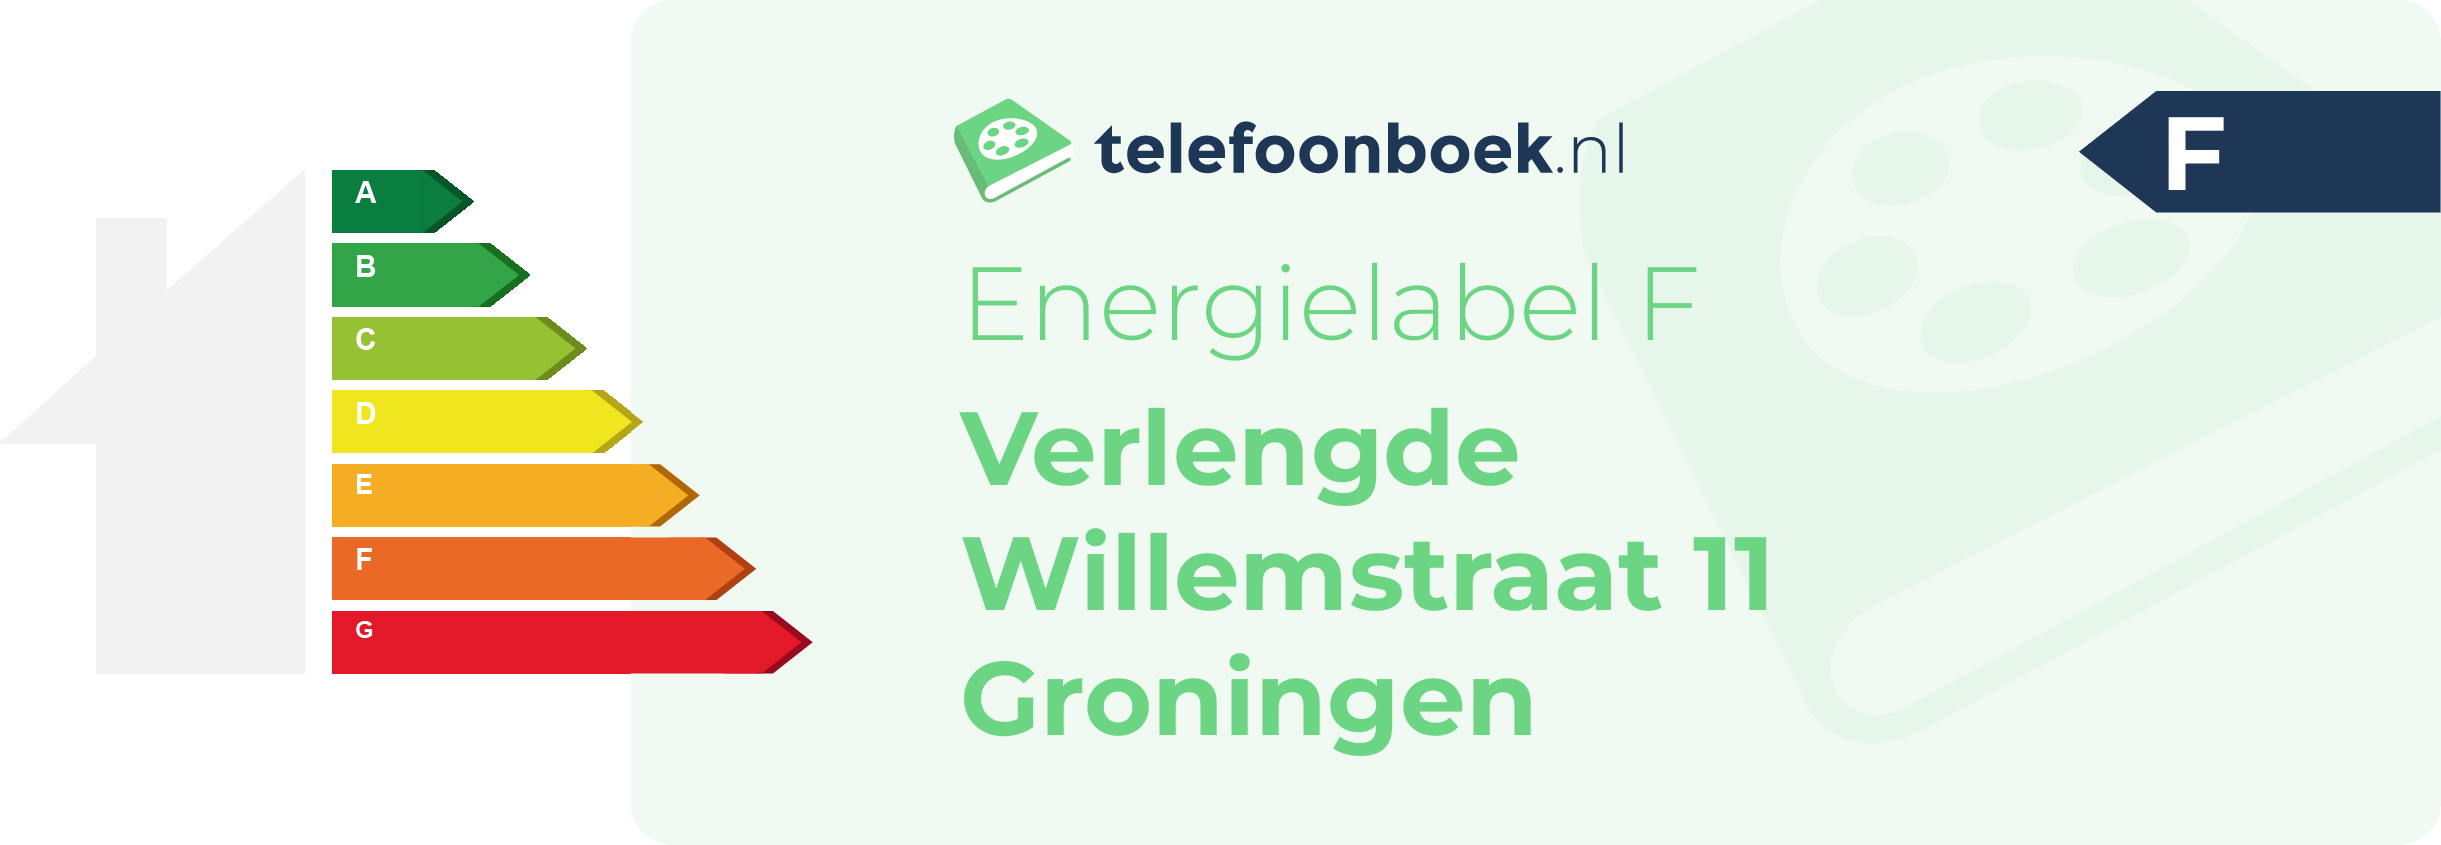 Energielabel Verlengde Willemstraat 11 Groningen